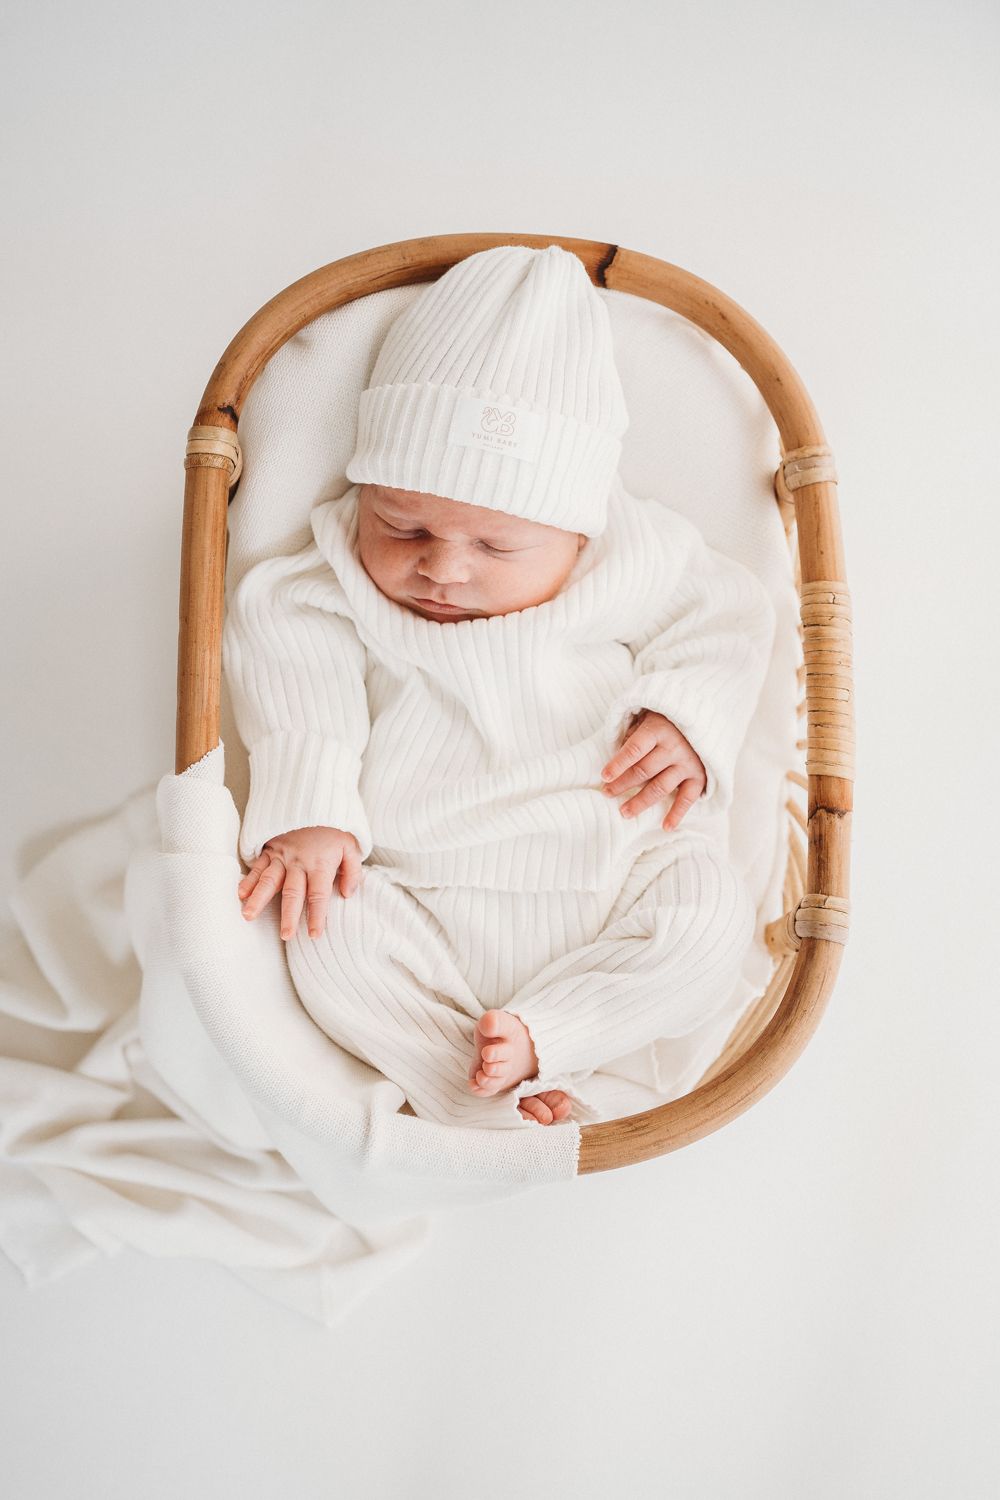 Een serene pasgeboren baby, gekleed in het wit, slaapt vredig in een knus, ovaalvormig rieten wiegje, dat een nieuw begin en pure onschuld symboliseert. De setting wordt versterkt door het comfortabele Yumi Baby Knitted broekje met parelmoer voor de baby.